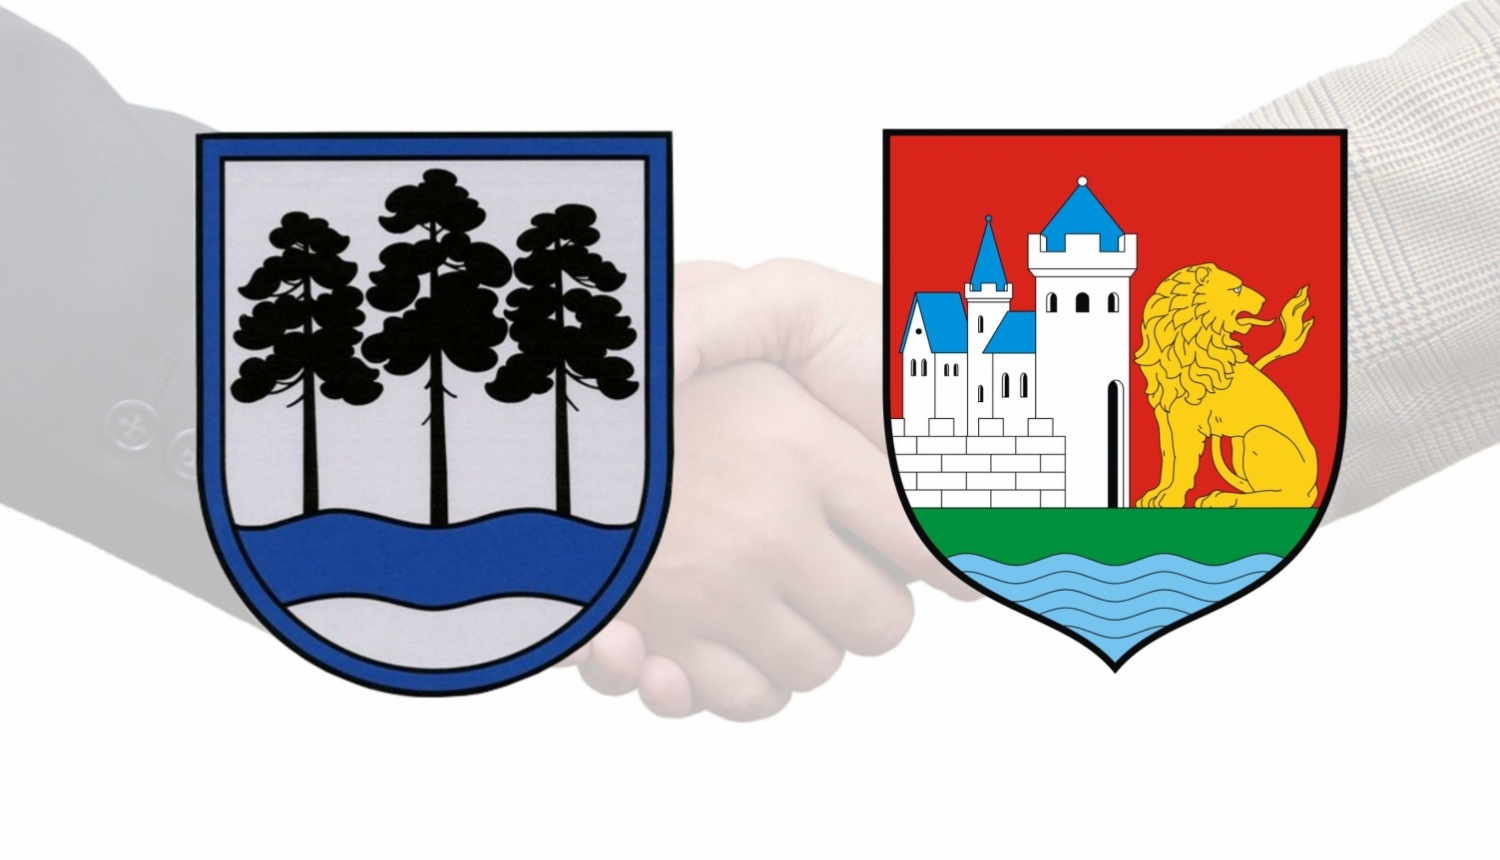 Slēgs sadarbības līgumu ar Lemborkas pilsētas pašvaldību Polijā